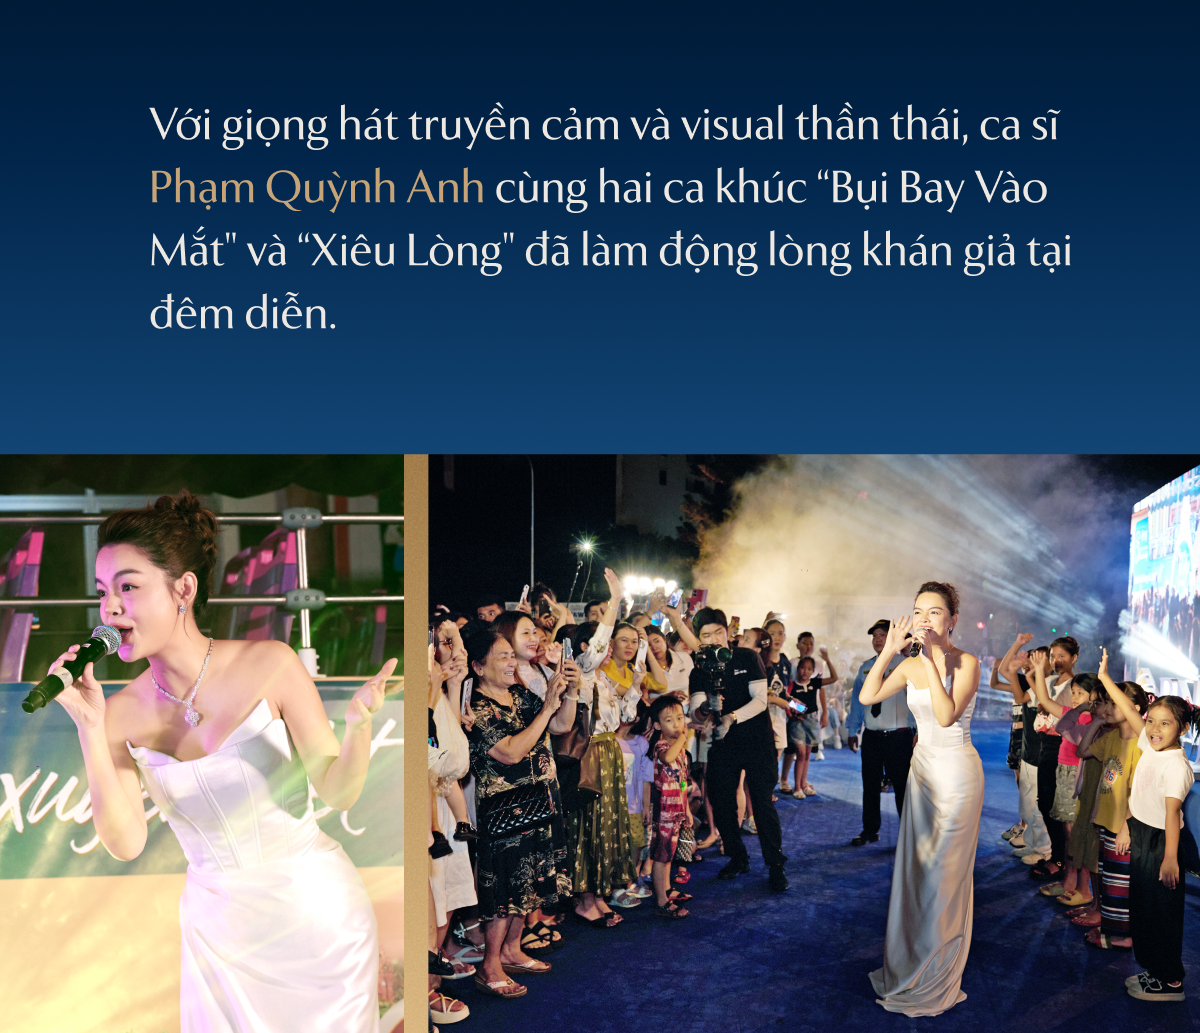 “Hành trình trang sức xuyên Việt” của PNJ: 60 ngày, 24 tỉnh thành và những con số truyền cảm hứng - Ảnh 4.